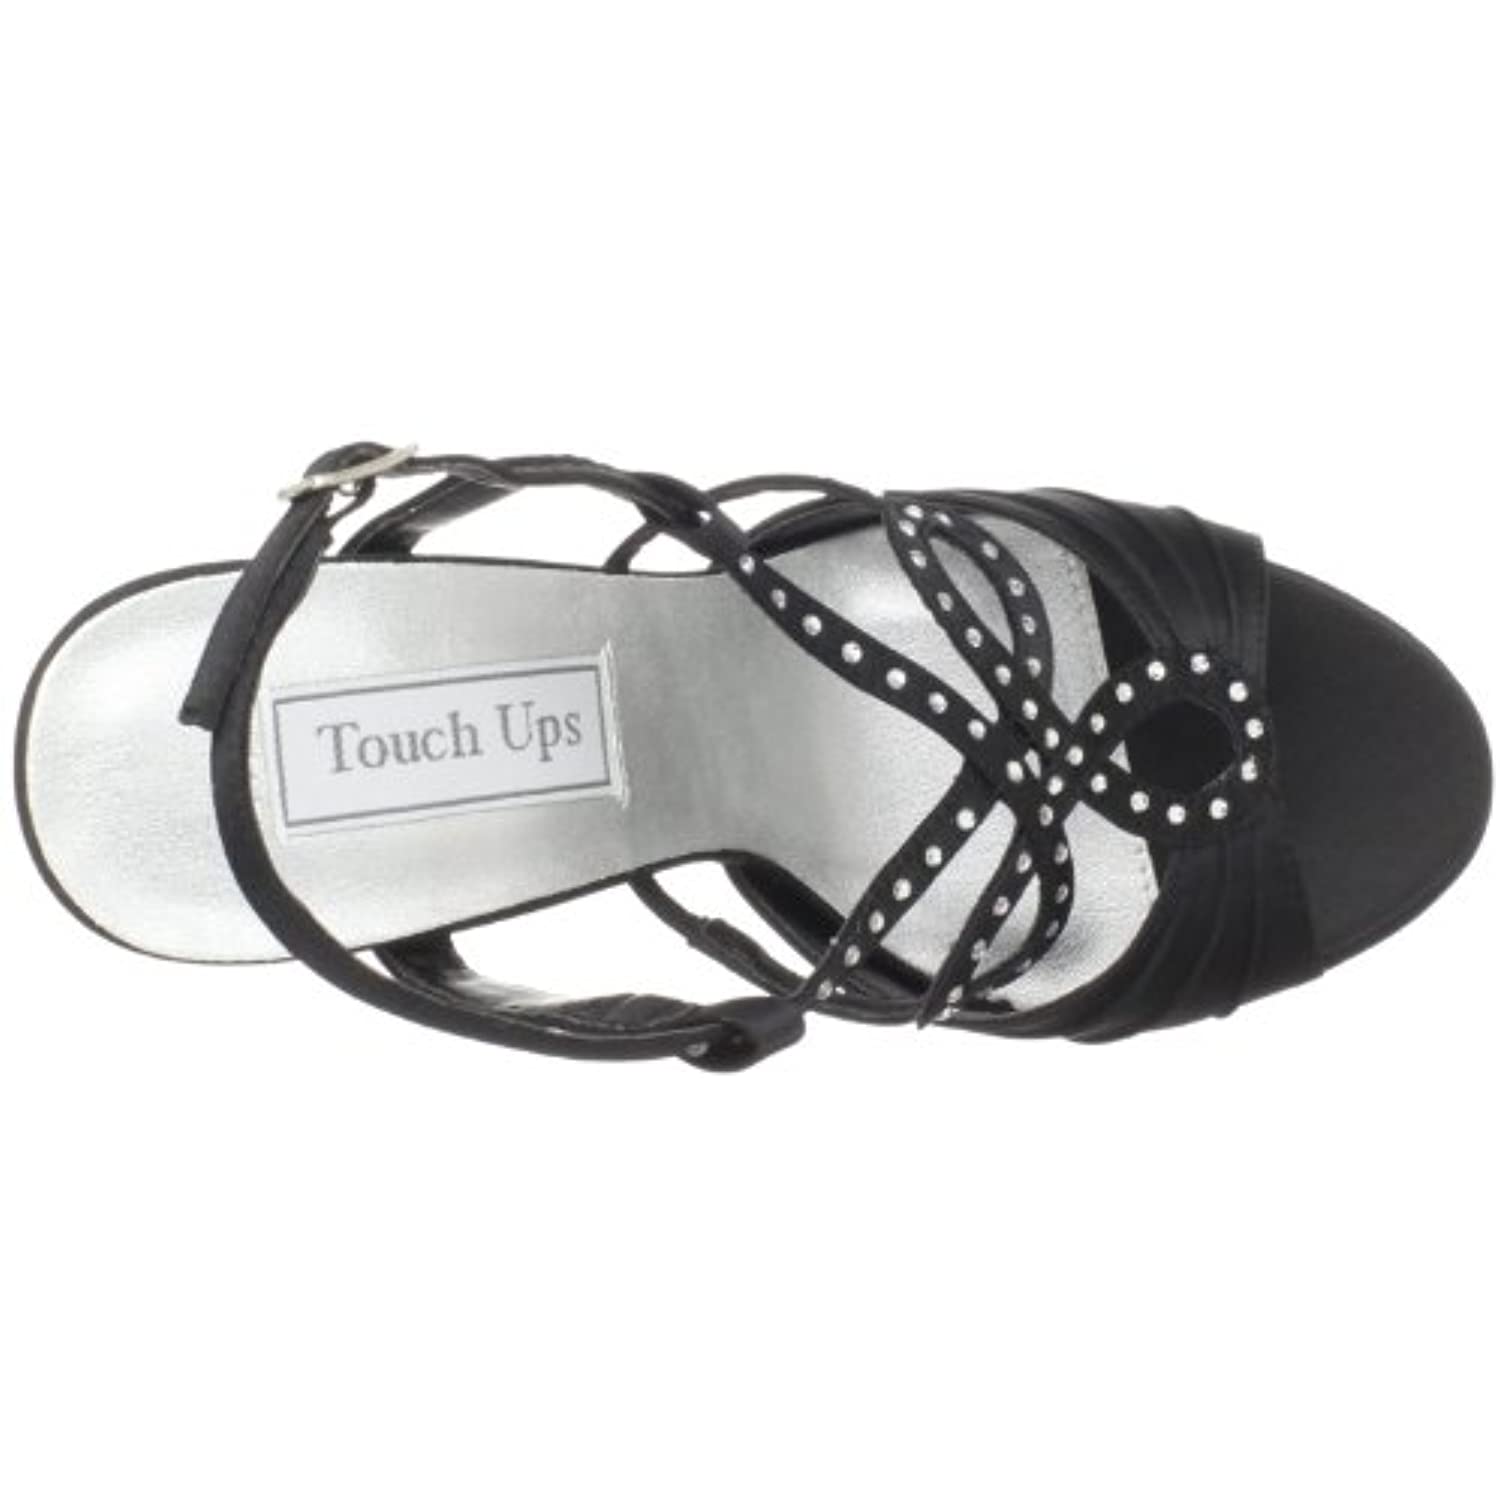 Touch Ups Women's Lonnie Leather Platform Sandal,Black Satin,5.5 M US